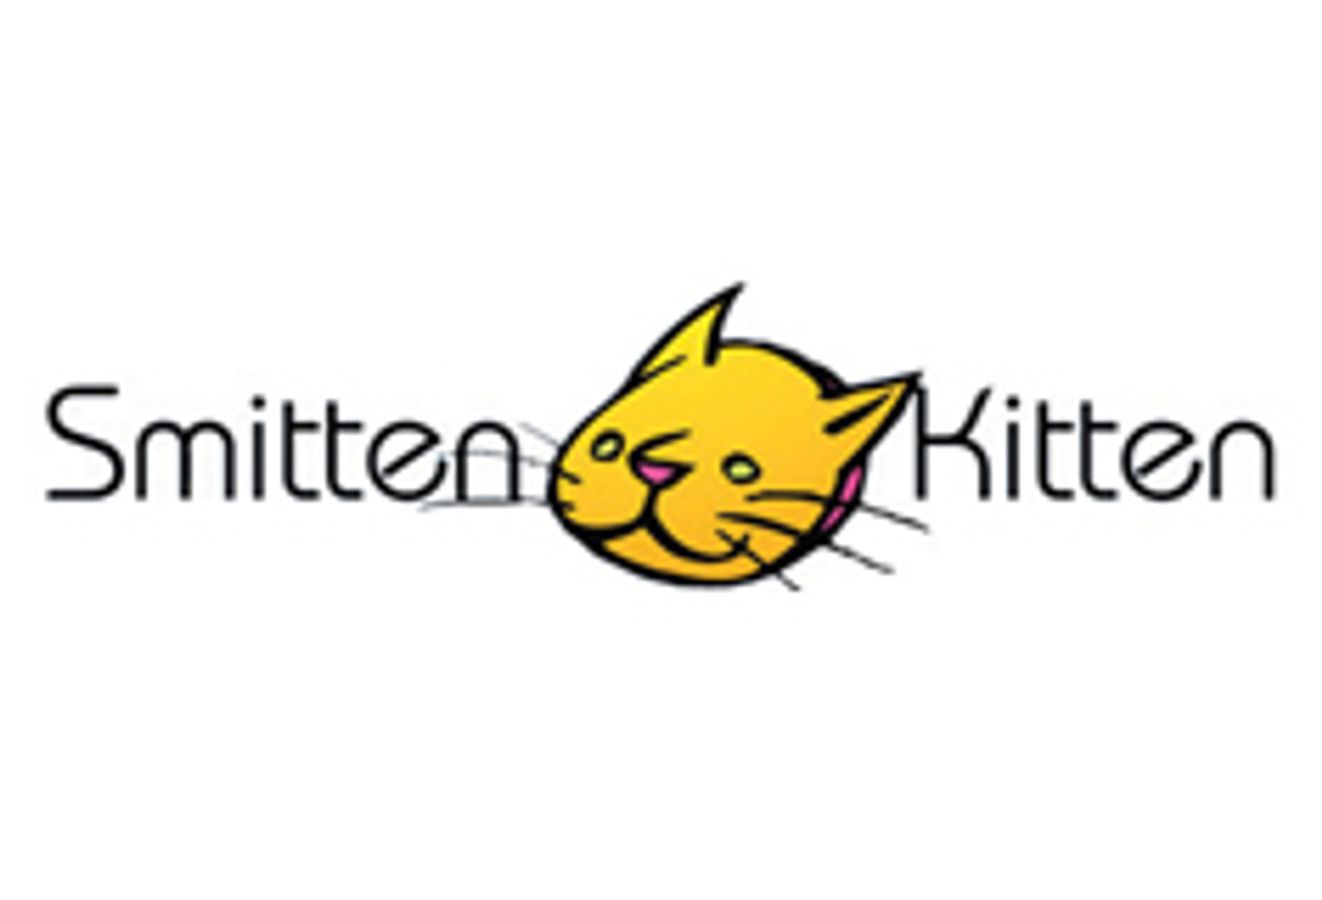 The Smitten Kitten